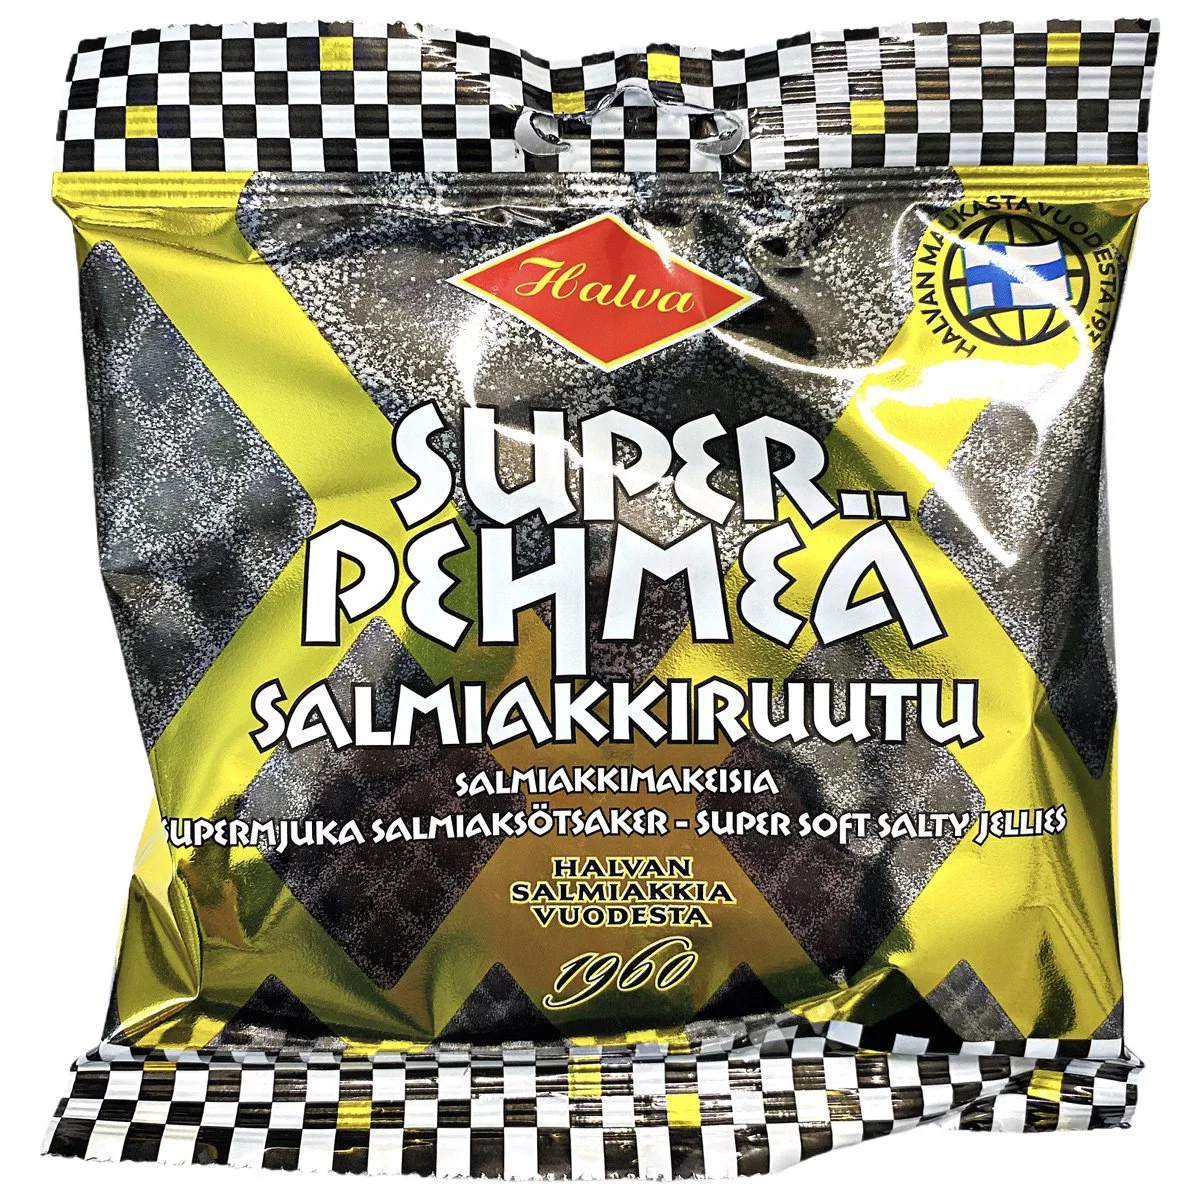 Halva Super Soft Salmiakki Ruutu - Pehmeä Salmiakkiruutu (100g) 1